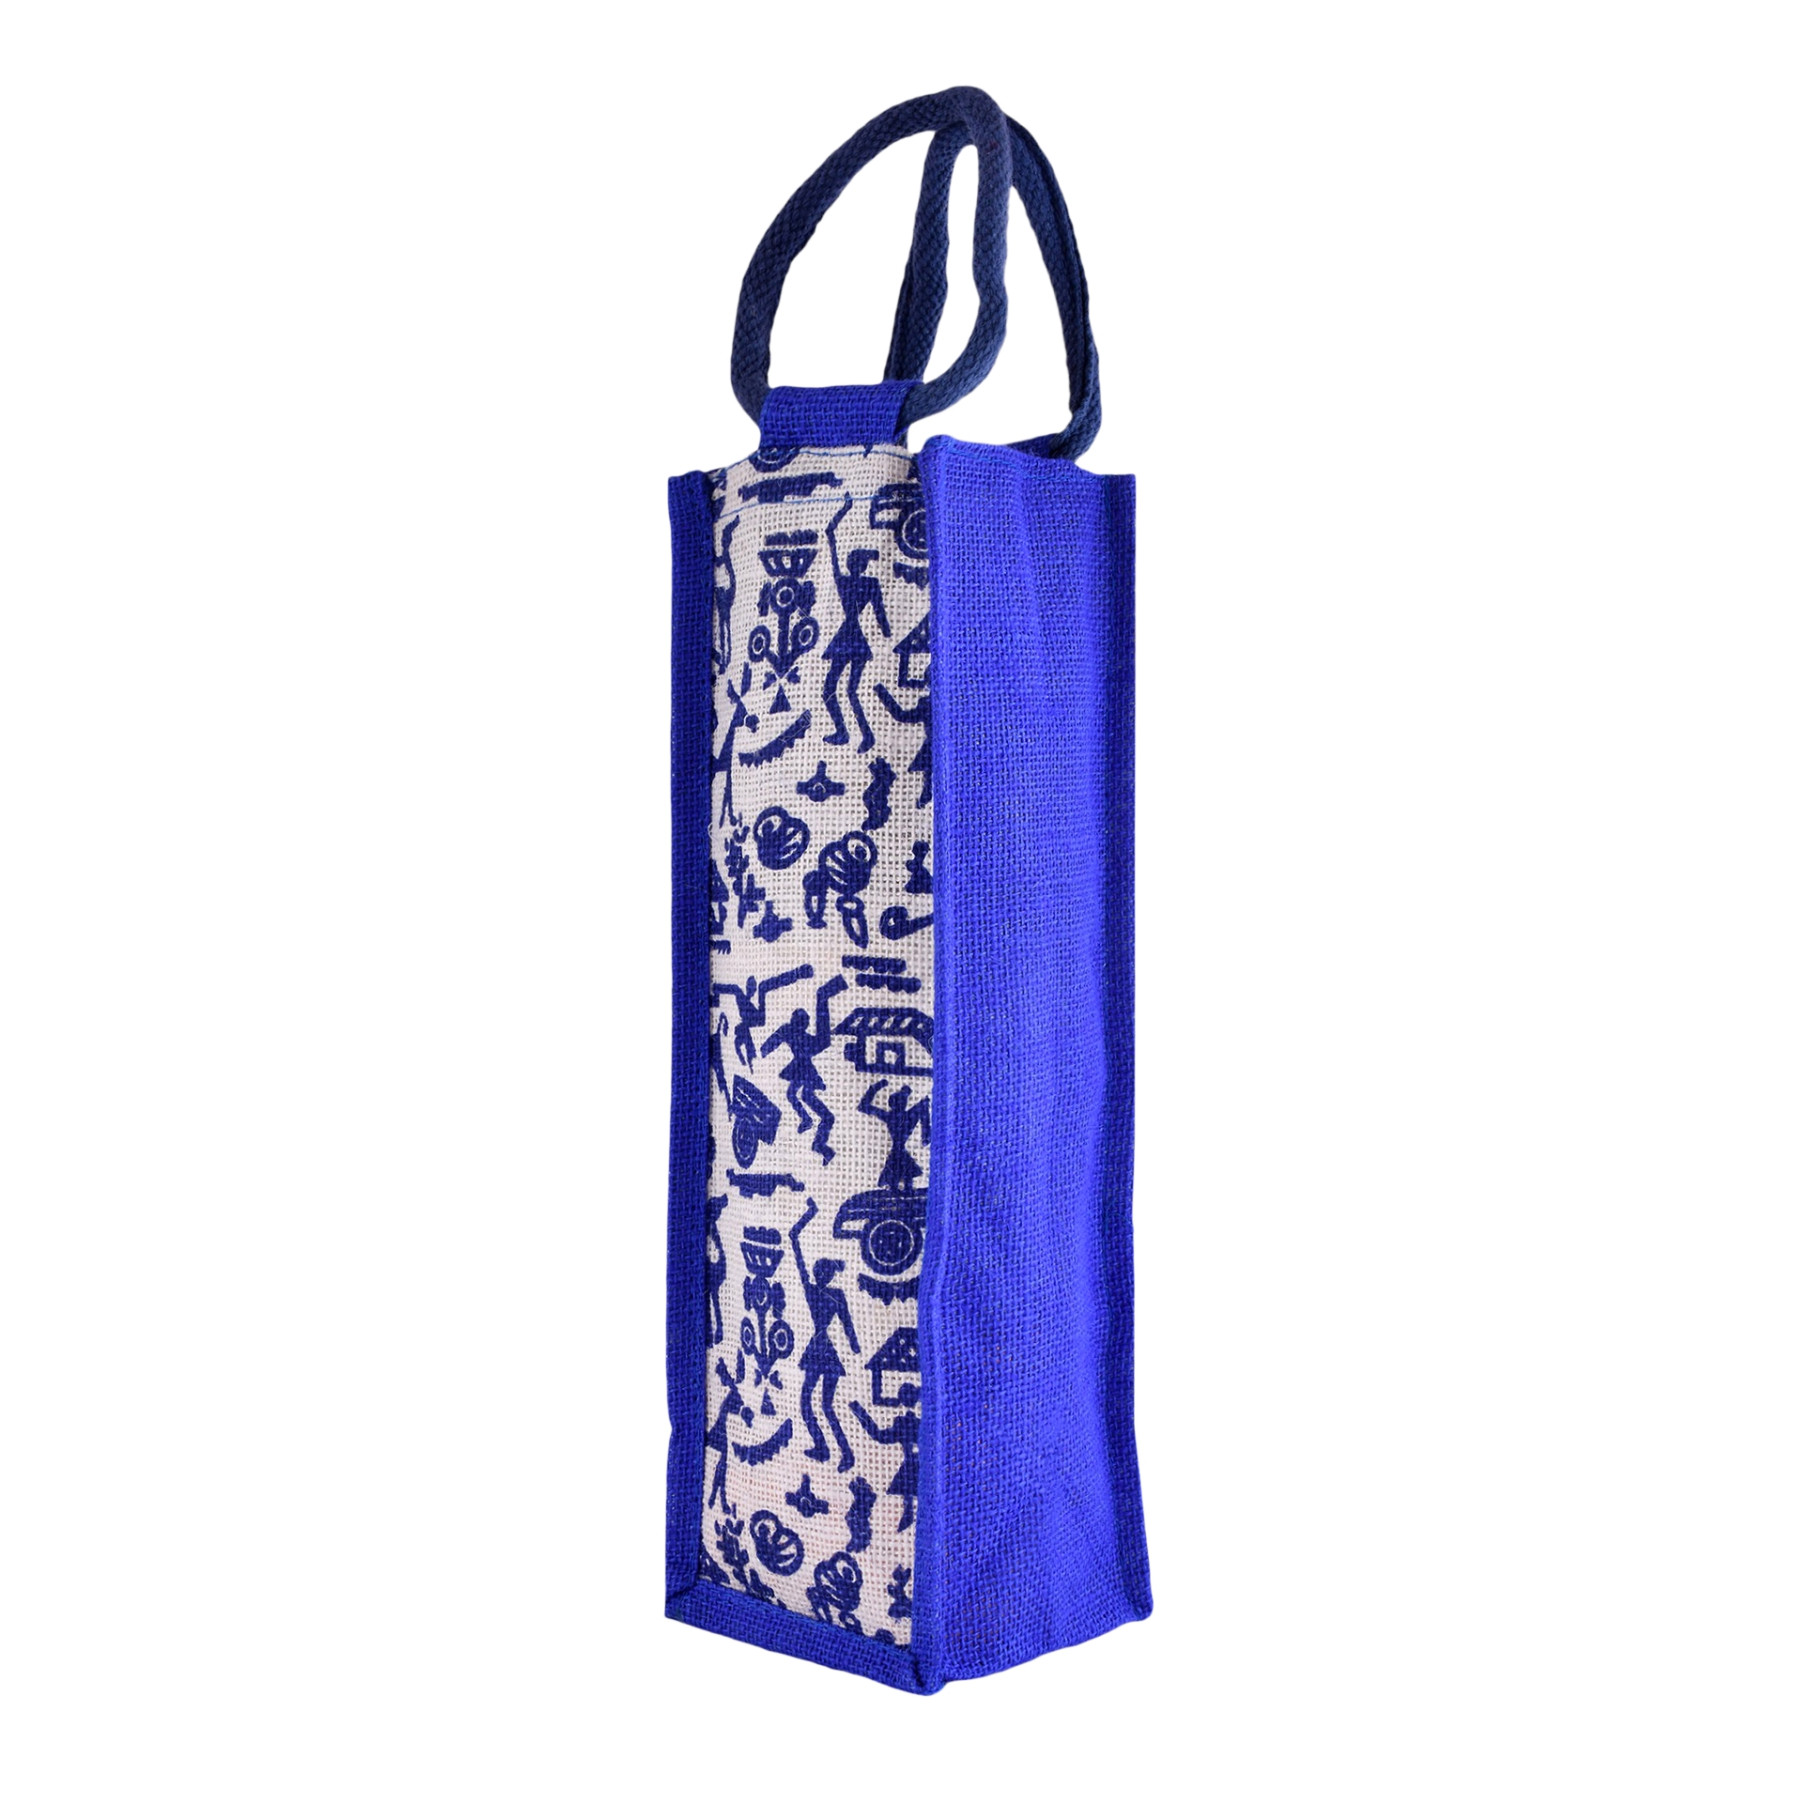 Kuber Industries Bottle Bag | Jute Carry Bag | Water Bottle Cover | Wine Bottle Bag | Reusable Bottle Bag with Handle | Bottle Bag for Office | Warli-Print Gift Bag | Blue